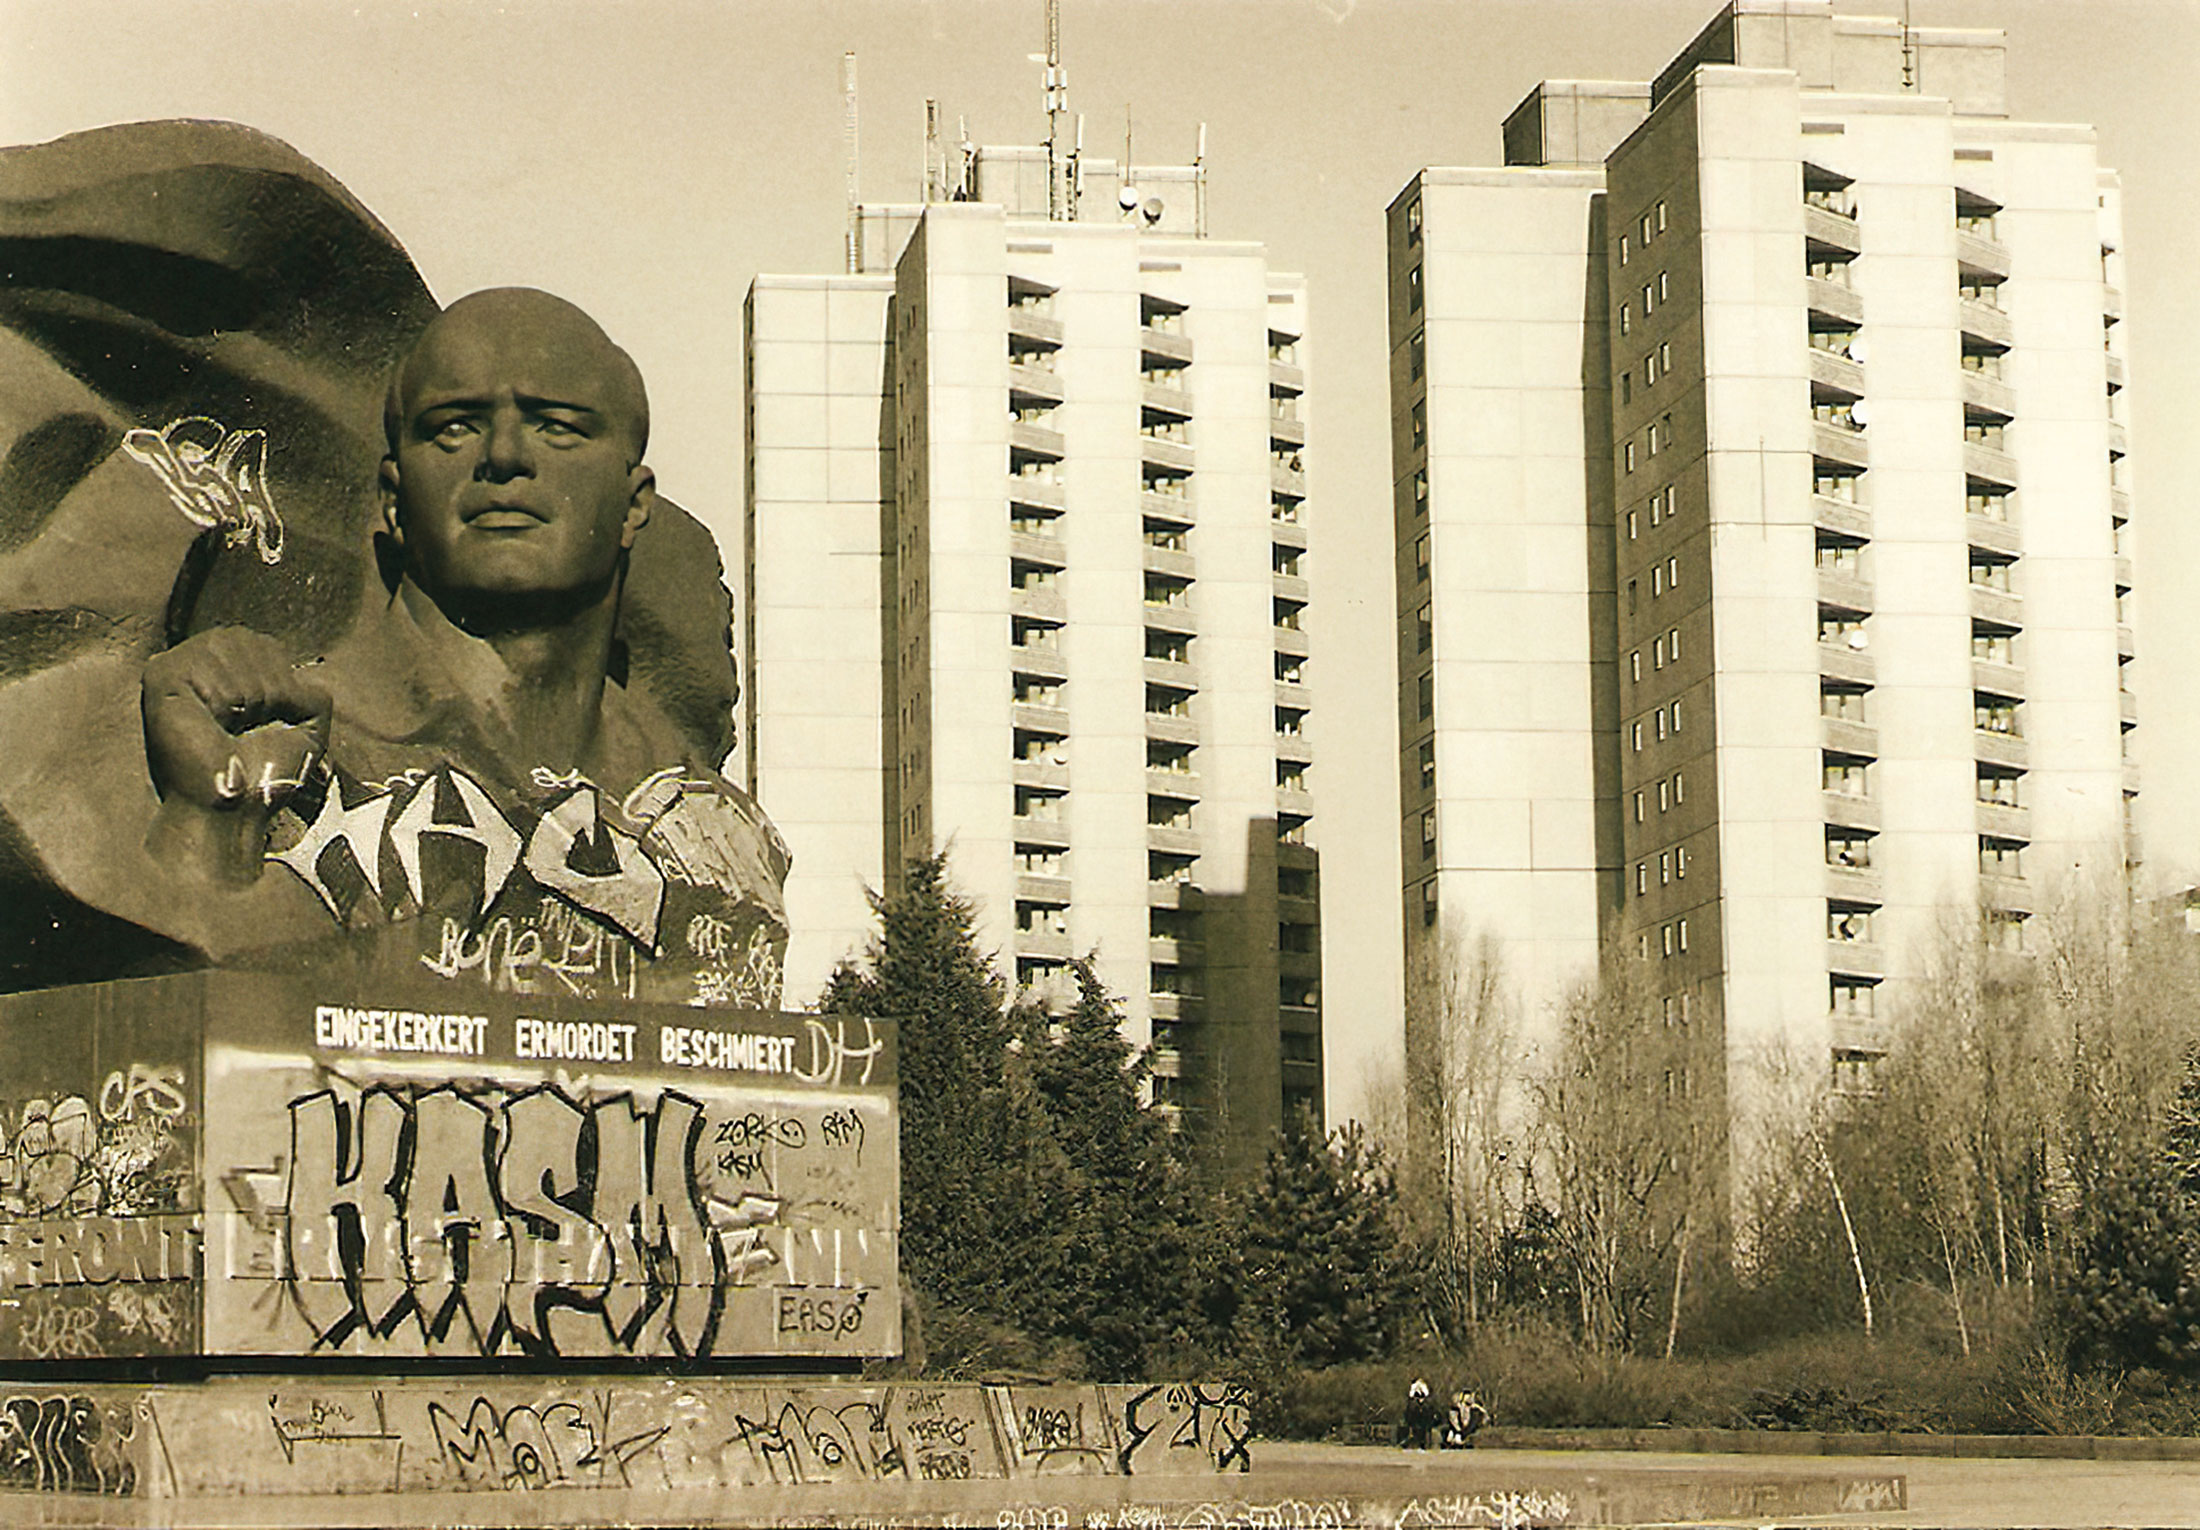 Das Thälmann-Denkmal wird seit den 1990er-Jahren wiederholt mit Graffiti bemalt. 1995 protestierten Anwohner:innen gegen den fortschreitenden Verfall und trugen die Worte „eingekerkert – ermordet – beschmiert“ auf. Seither wechseln sich Reinigungs- und Sprayer-Aktivitäten ab.